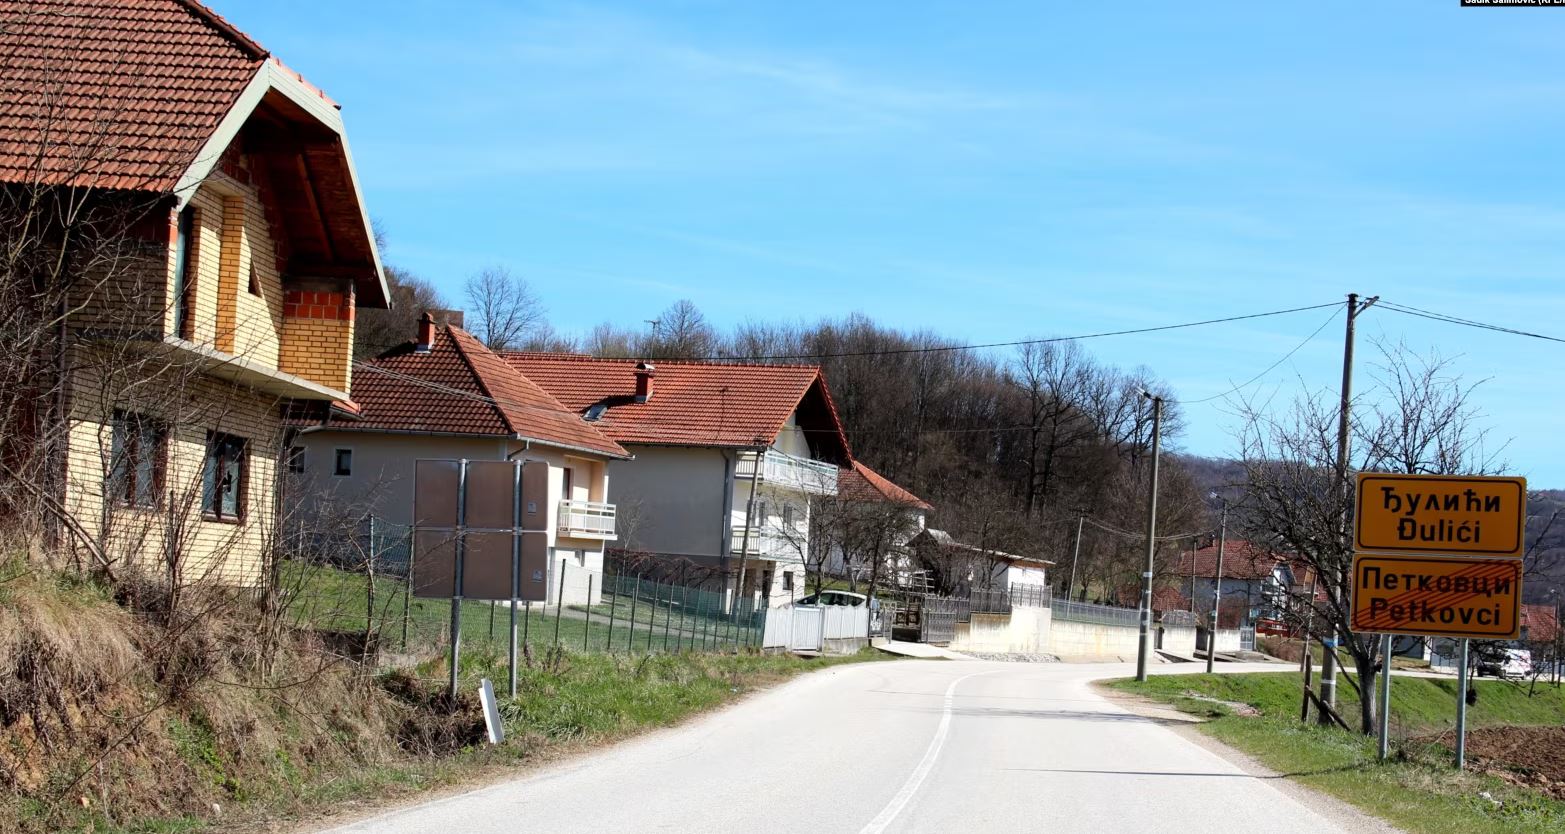 Selo u BiH u kojem je rođen glumac iz oskarovskog filma